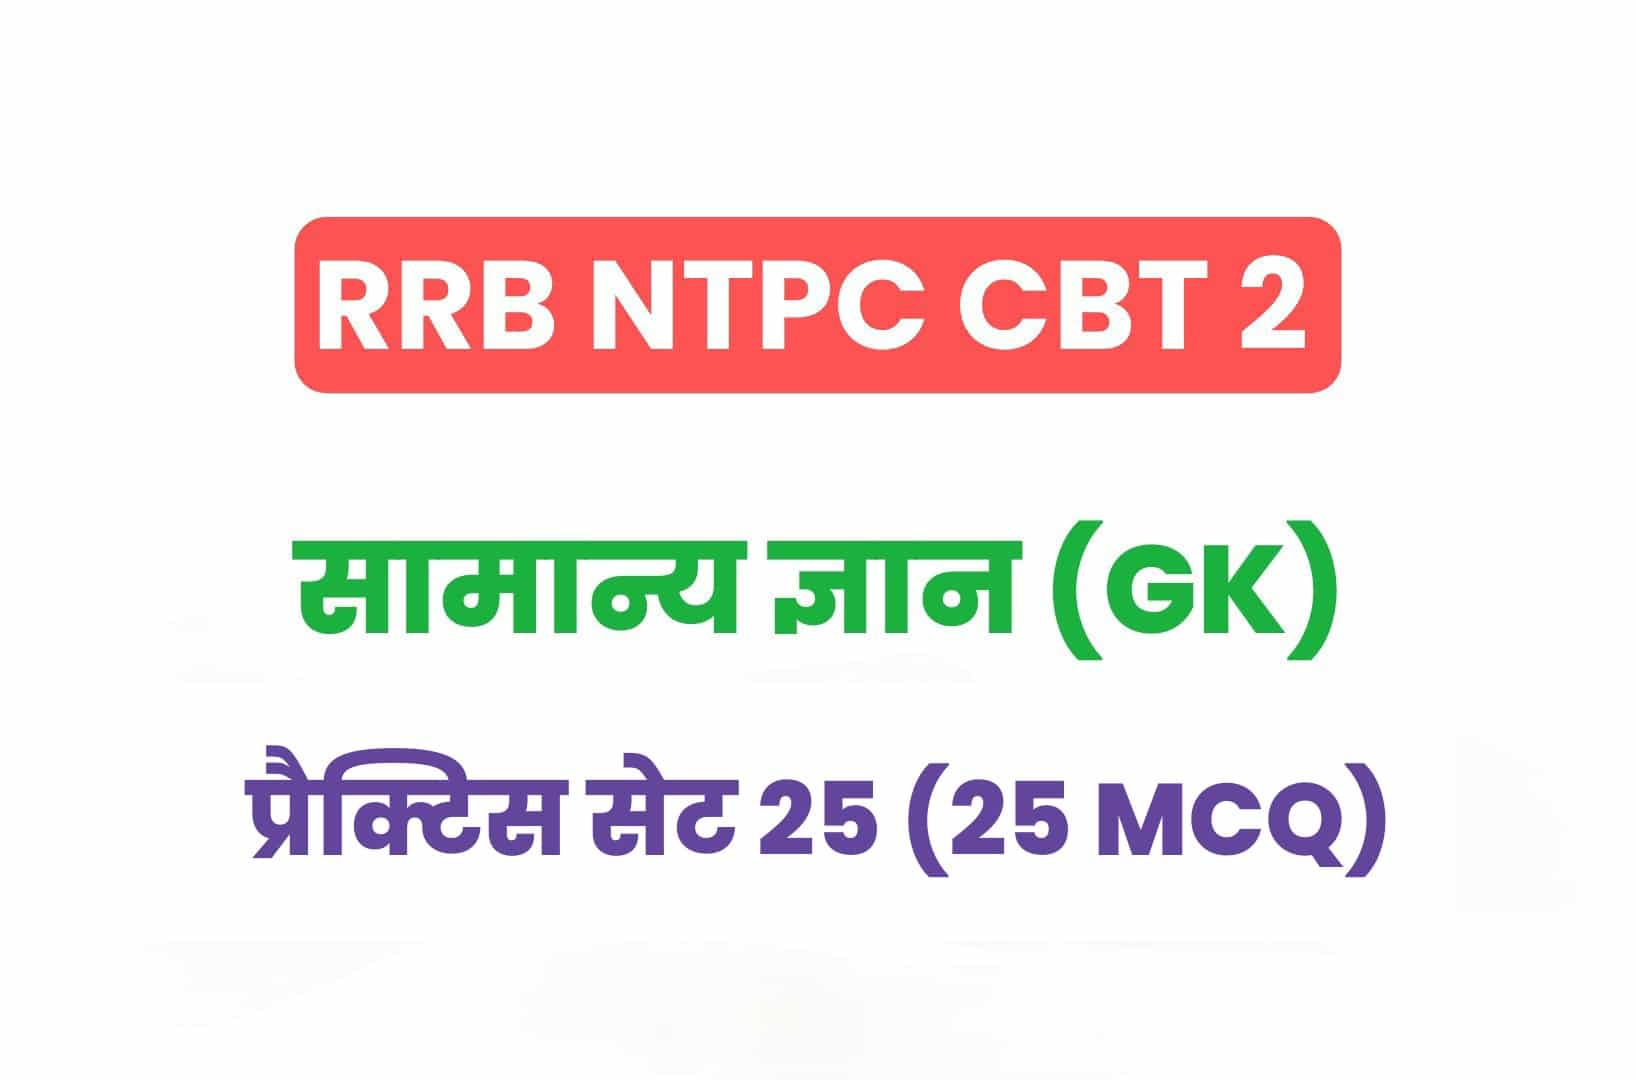 RRB NTPC CBT 2 GK प्रैक्टिस सेट 25: सामान्य ज्ञान के महत्वपूर्ण प्रश्नों का संग्रह, जरूर देखें